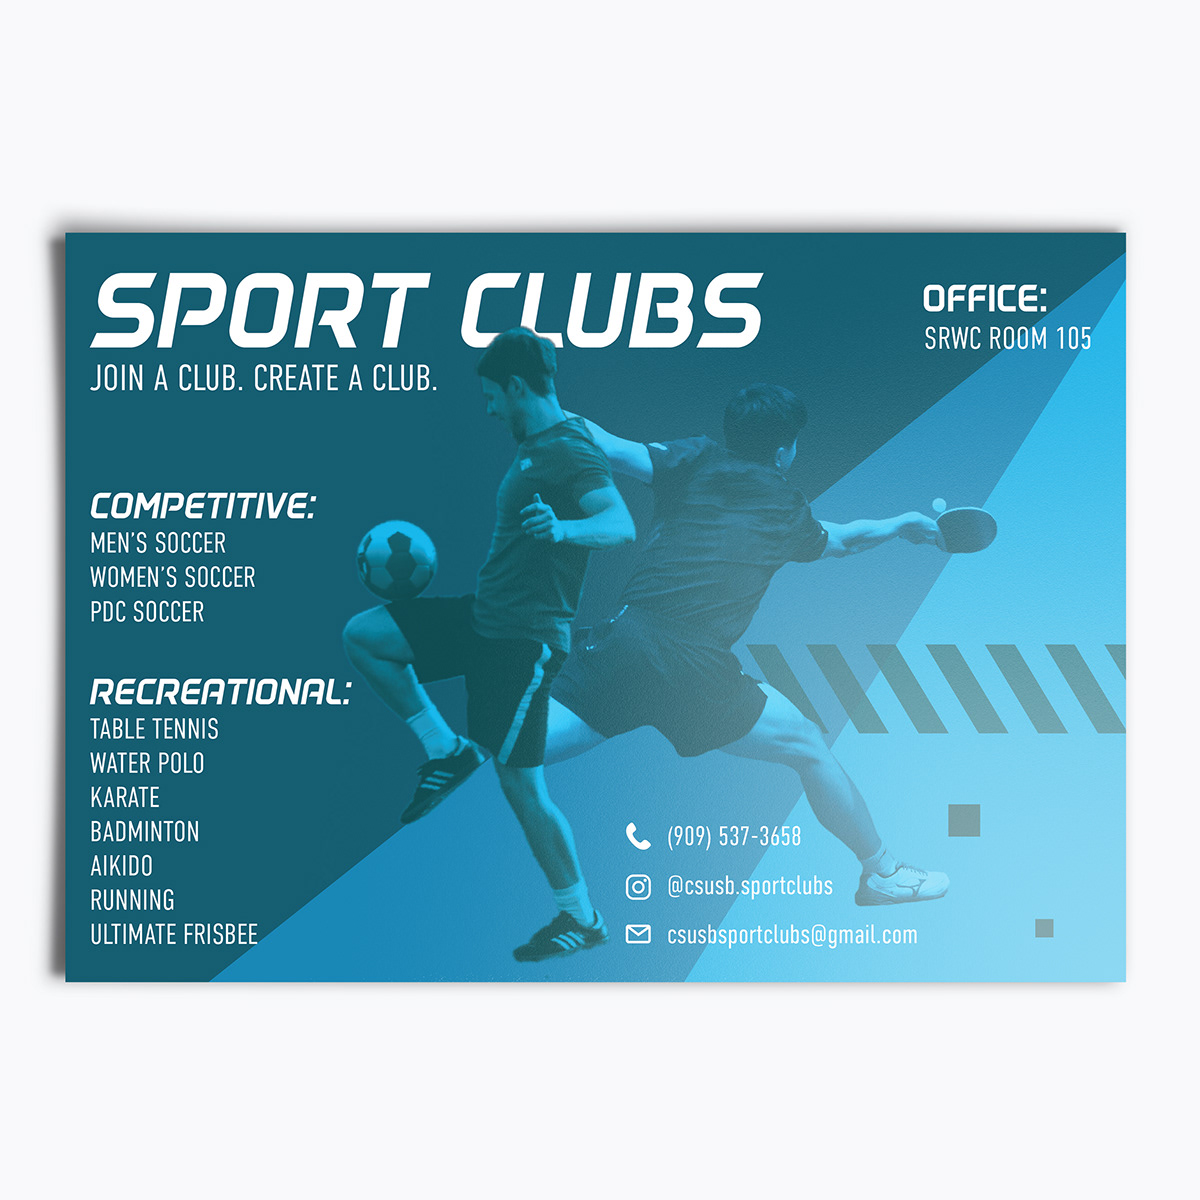 Sports club or sport club. Sports Club. Club for Sports. Club in Sport. Intramural Sport.